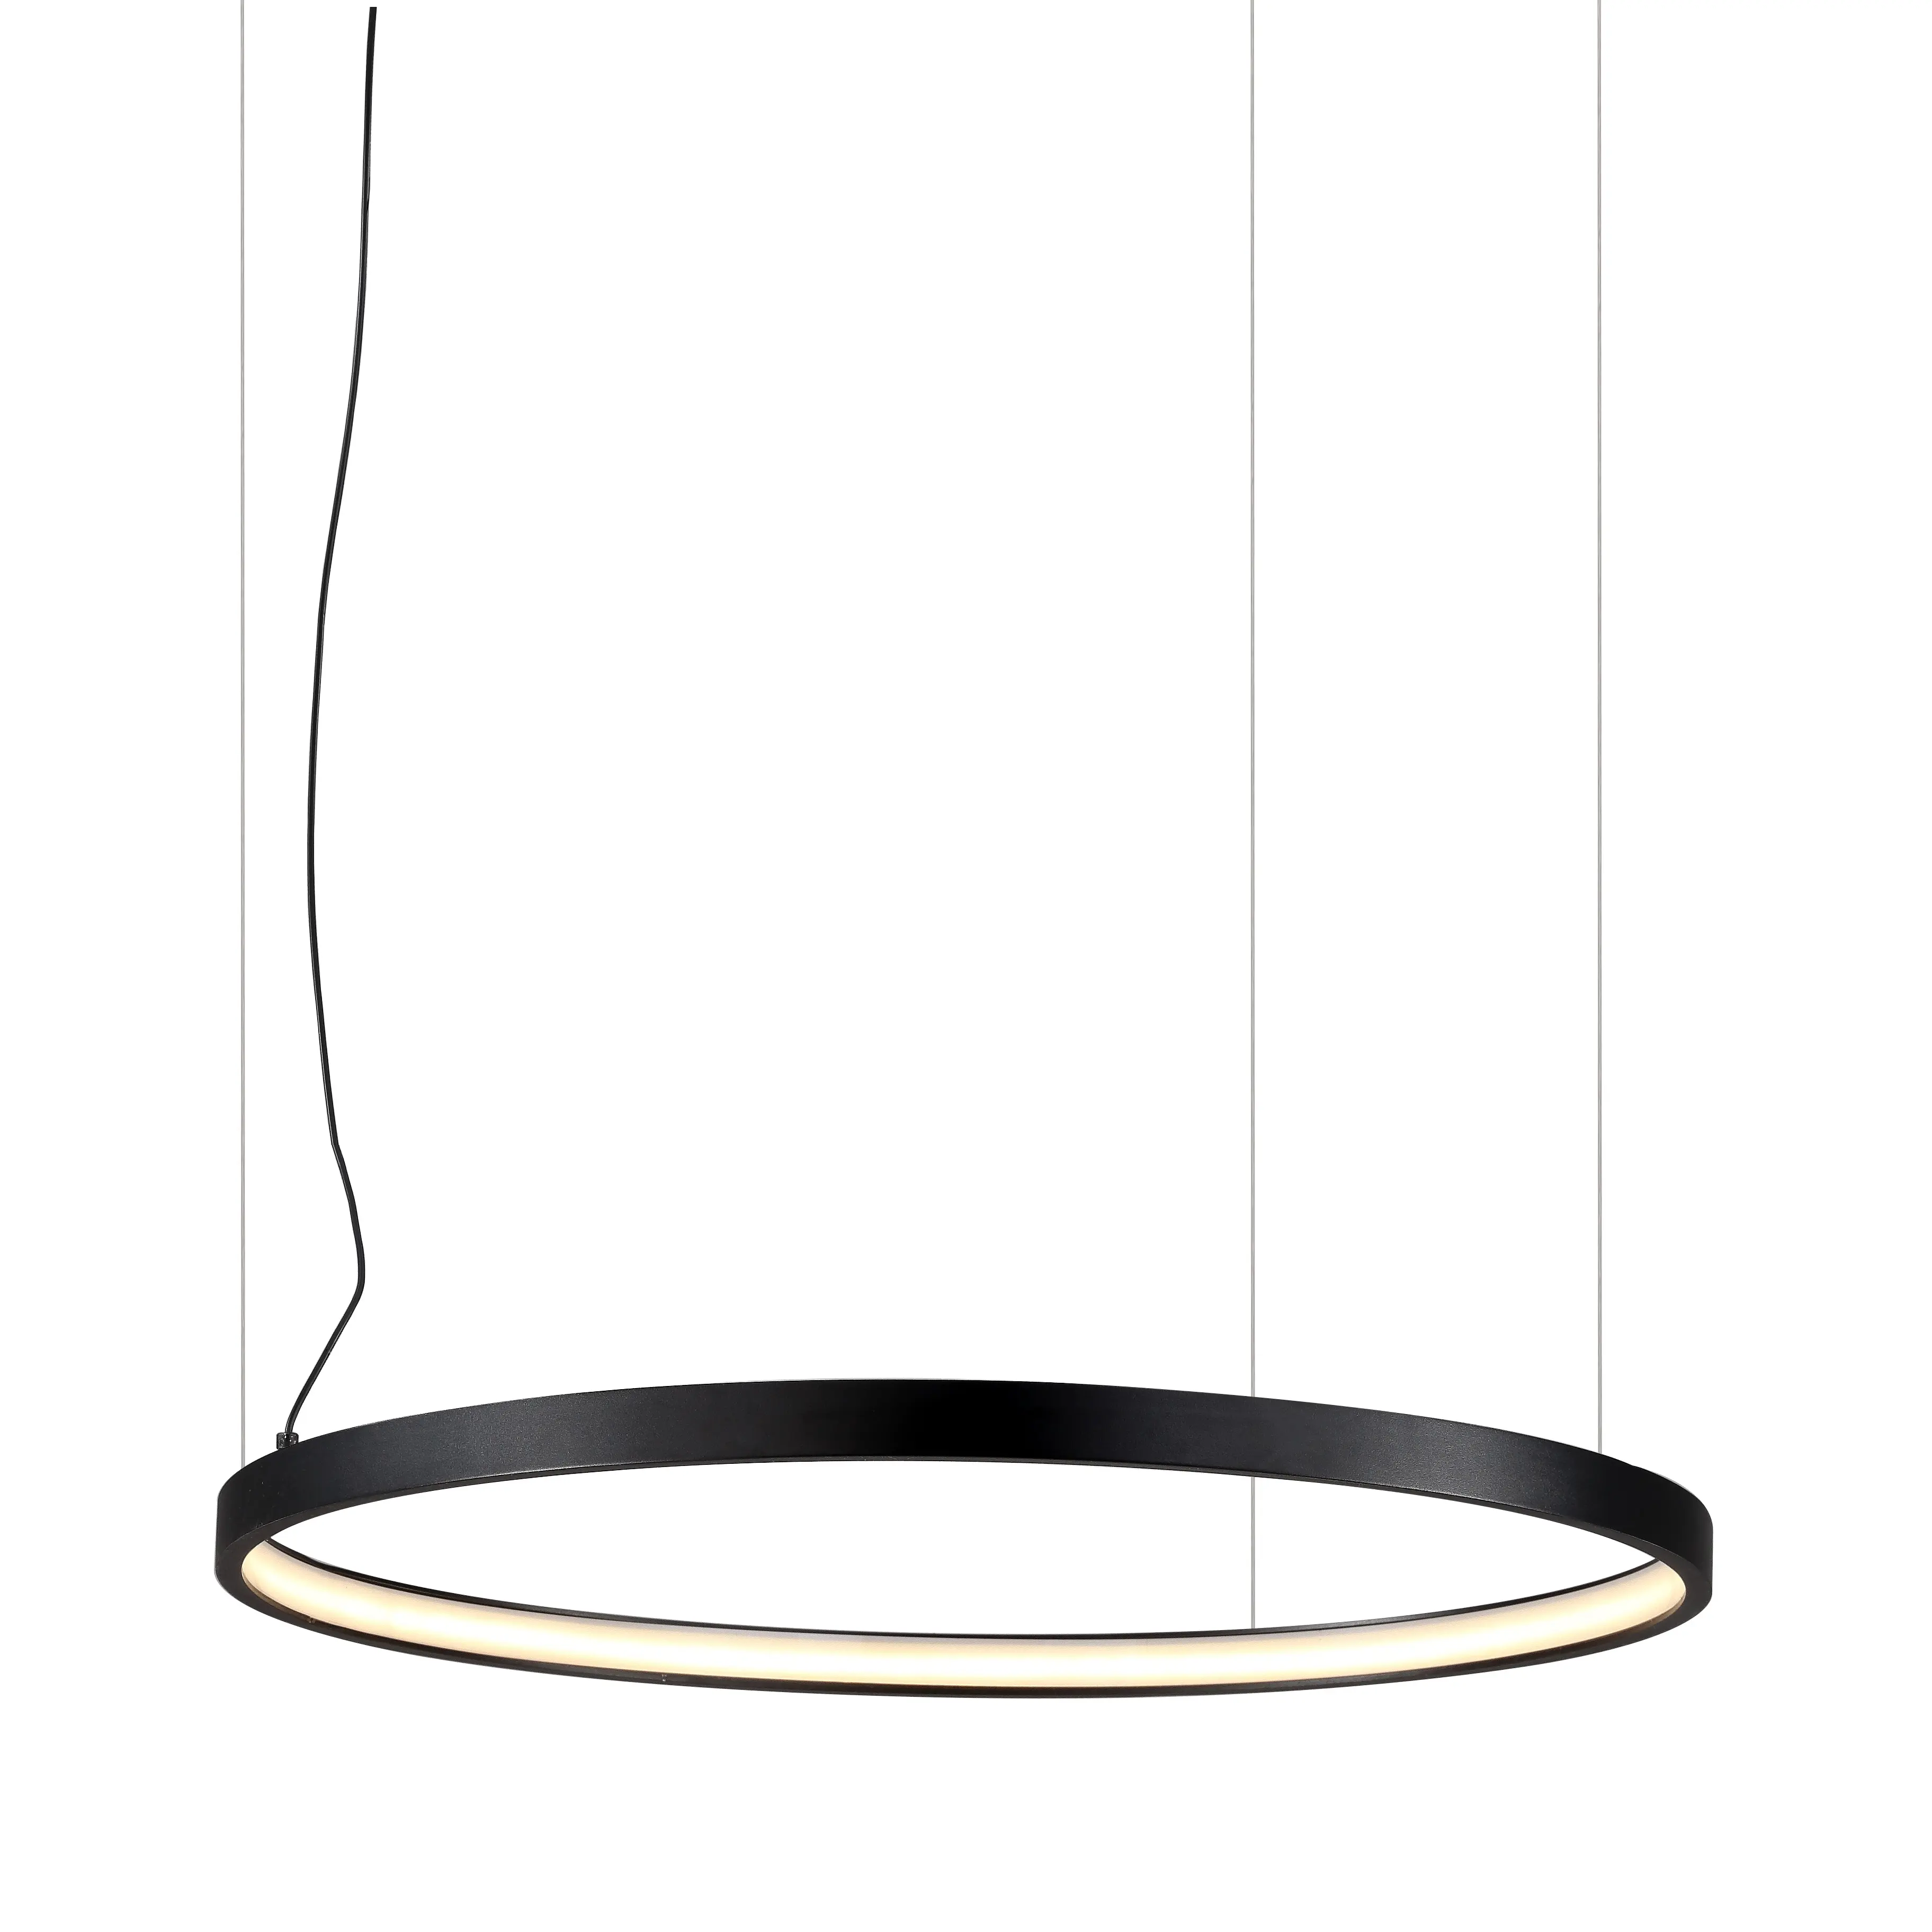 Plafonnier led suspendu en aluminium noir, design artistique moderne, économie d'énergie, grand cercle, lampe suspendue